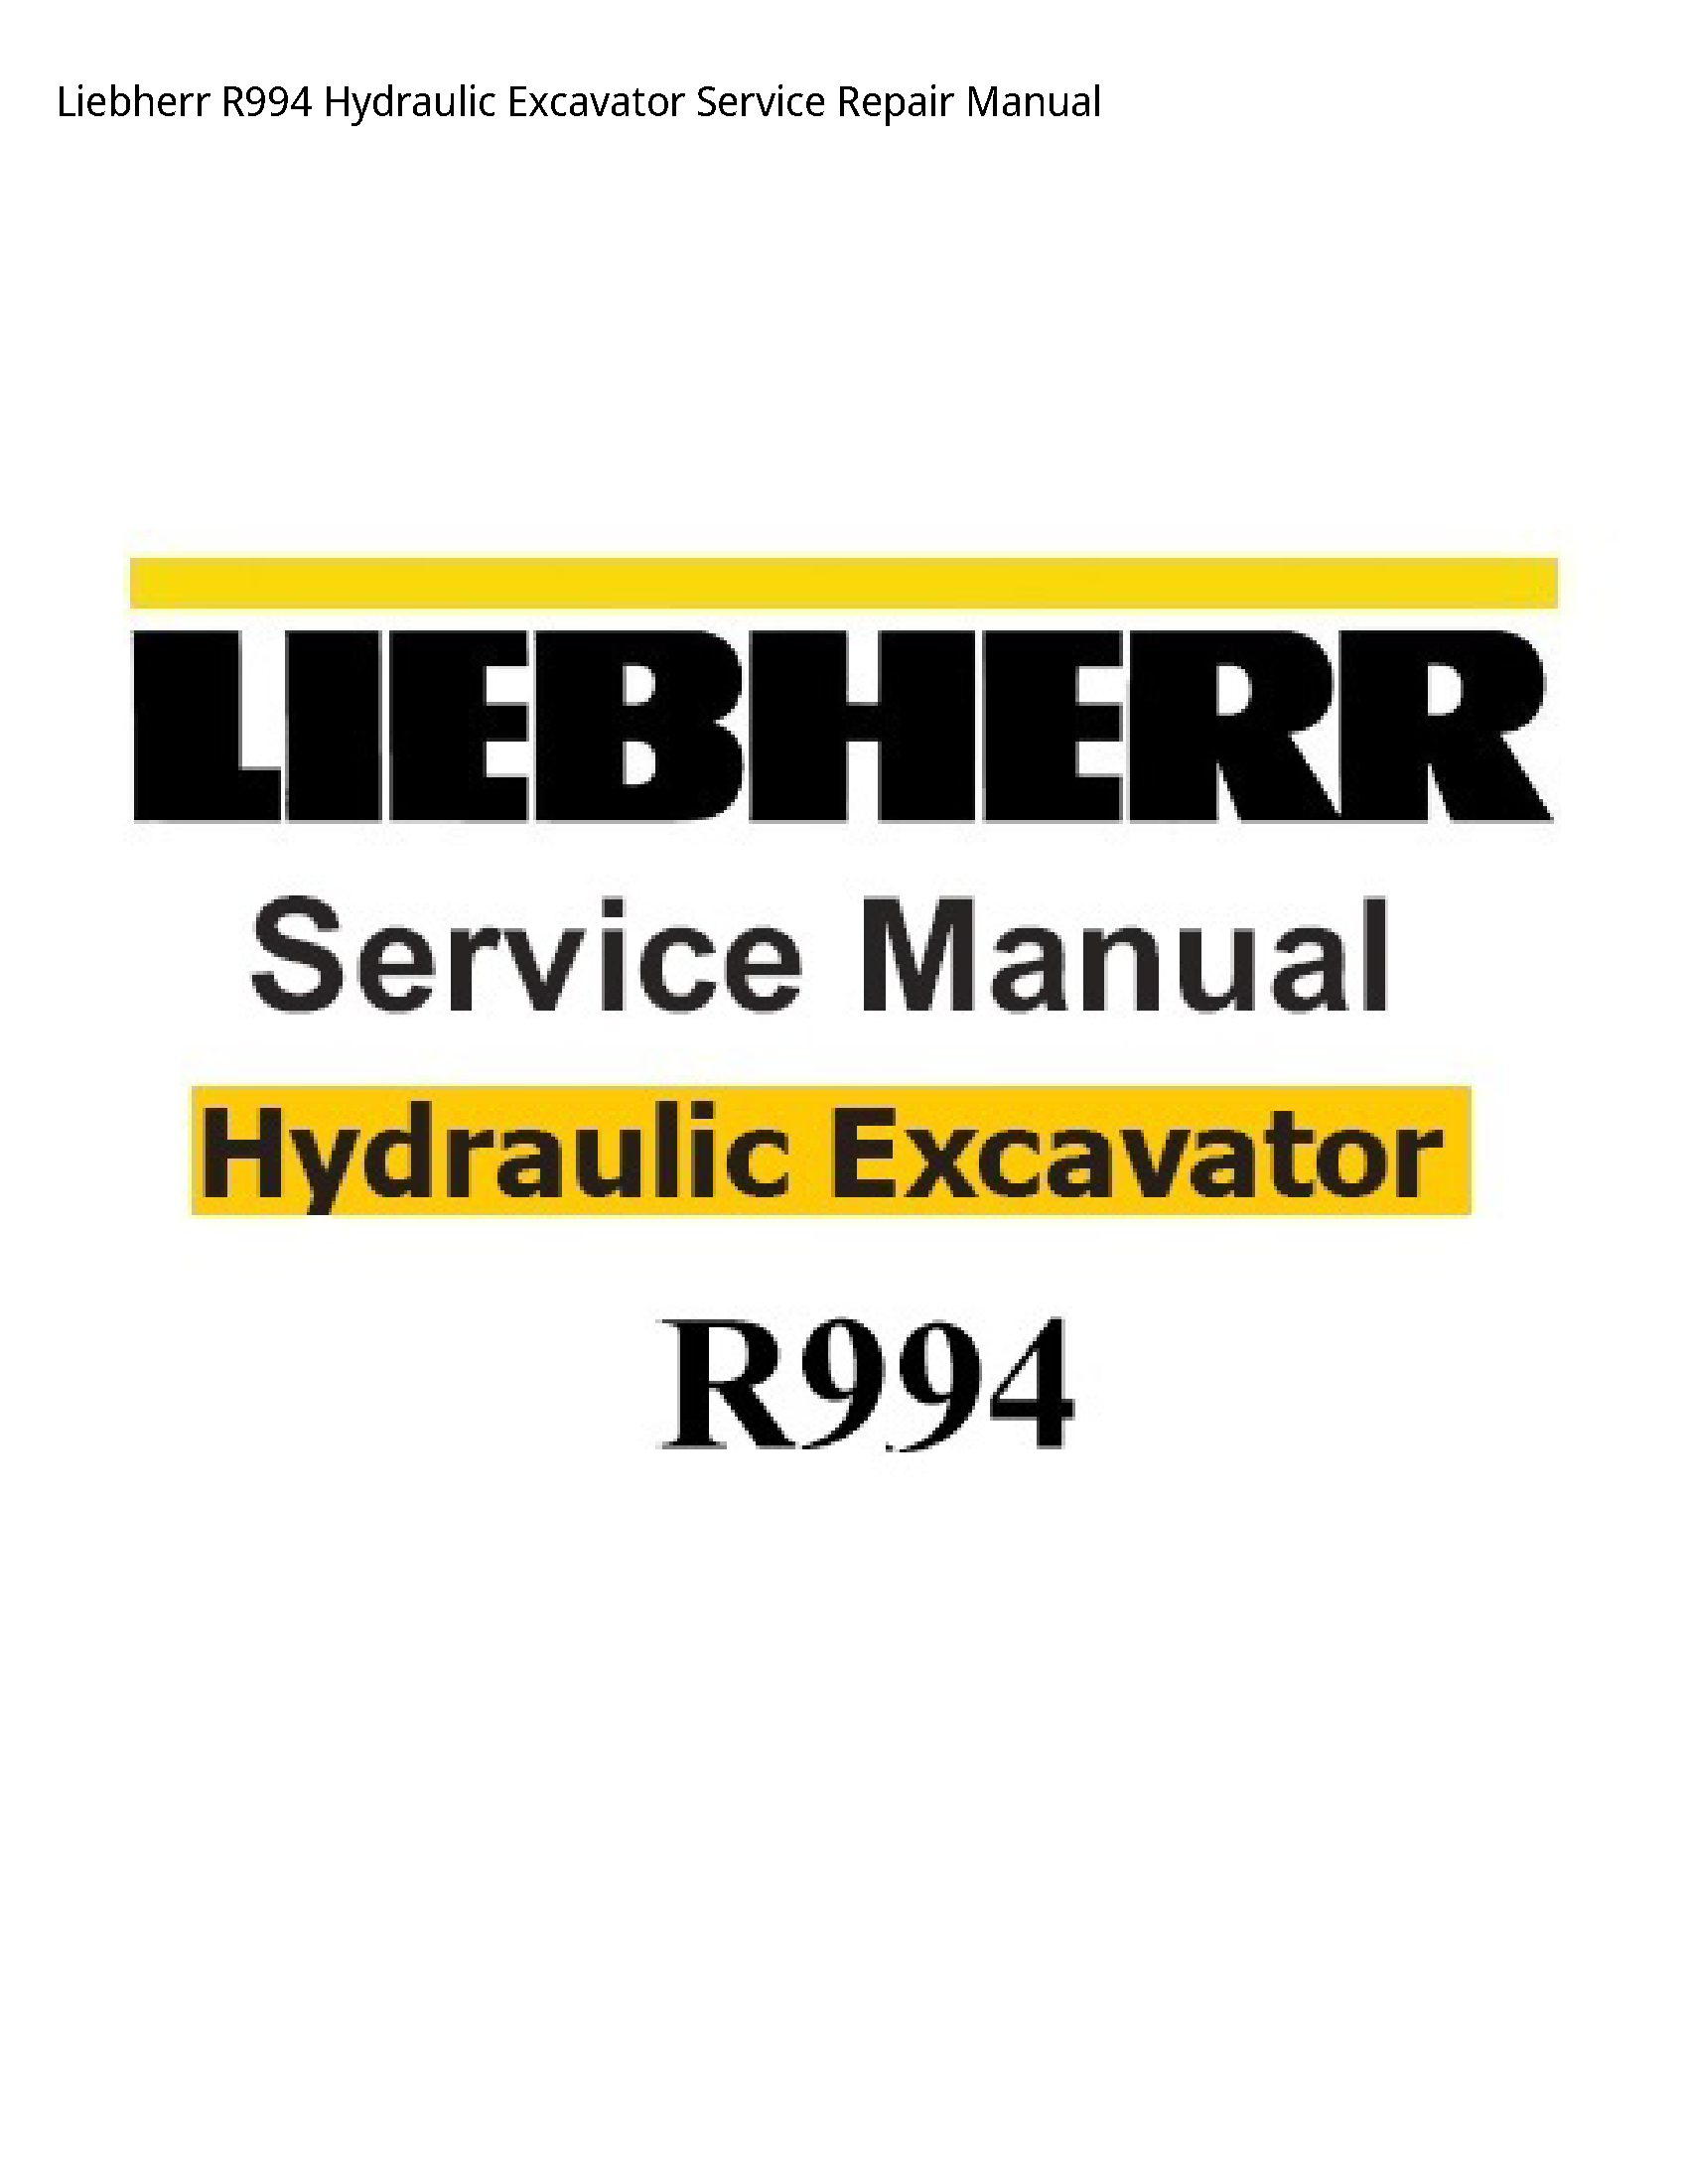 Liebherr R994 Hydraulic Excavator manual